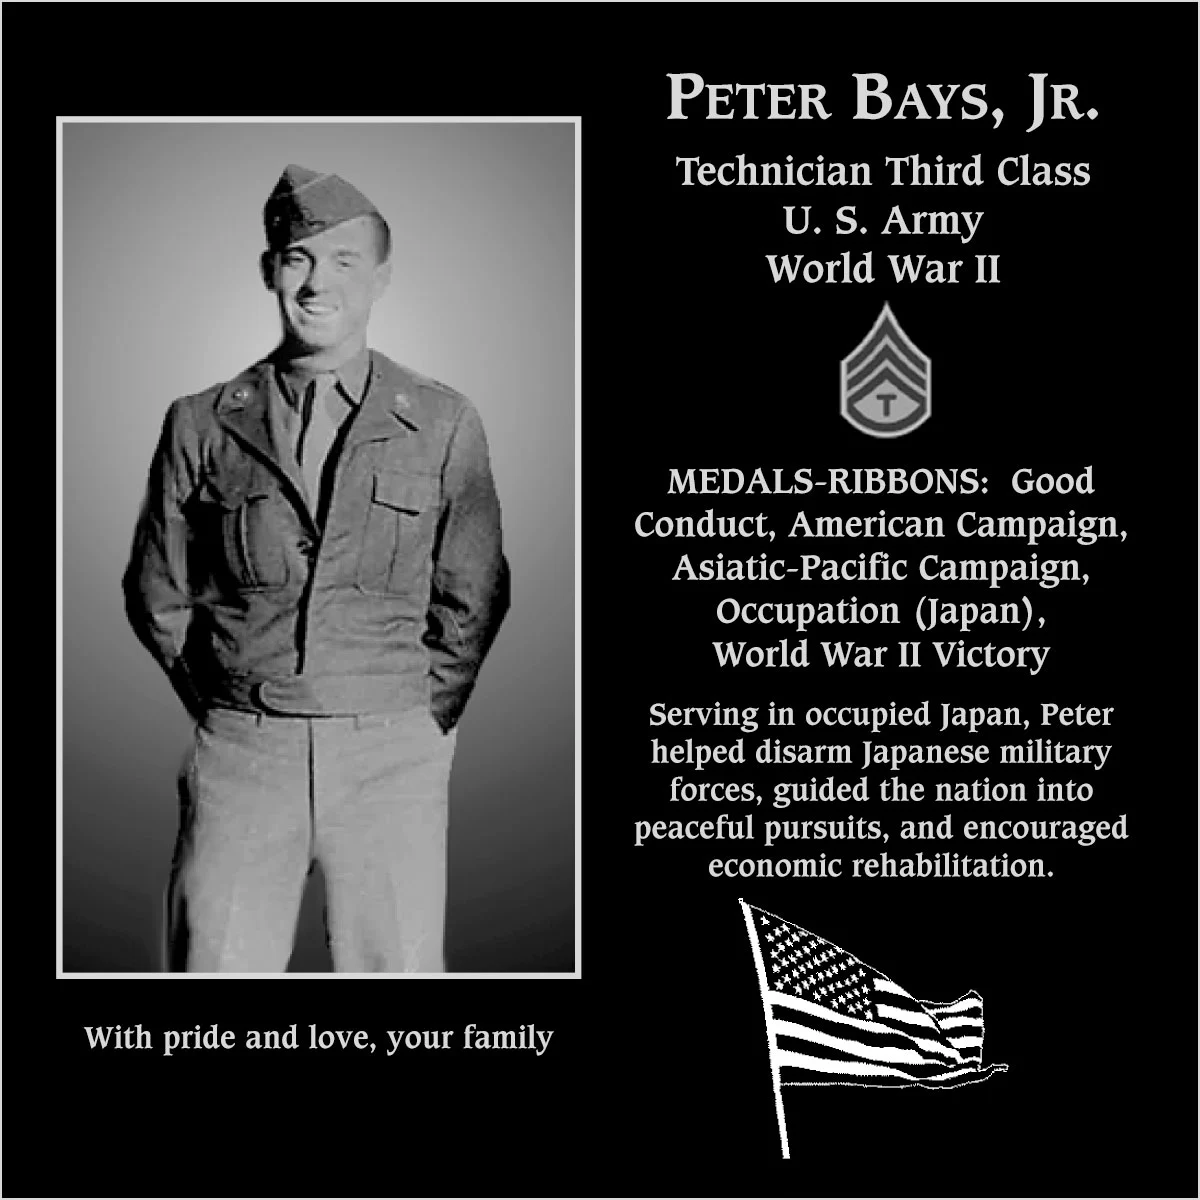 Peter Bays, jr